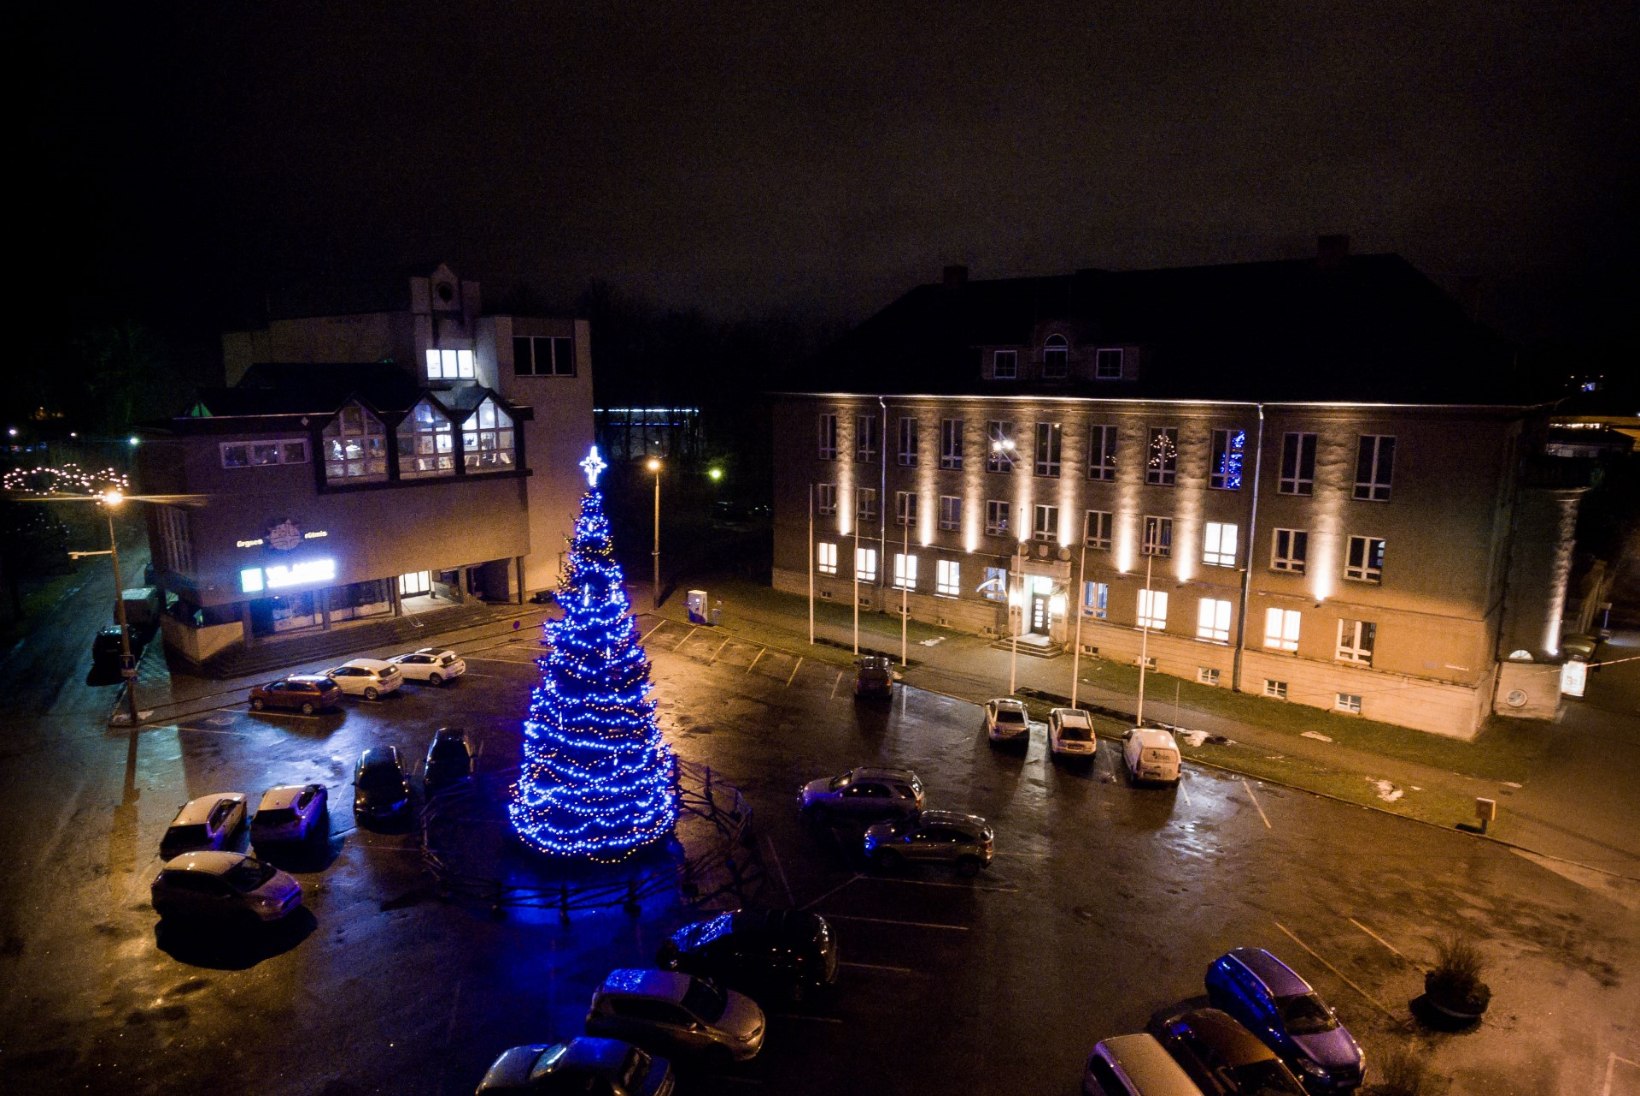 FOTOD | Viljandi jõulupuu läheb linnale maksma 5146 eurot